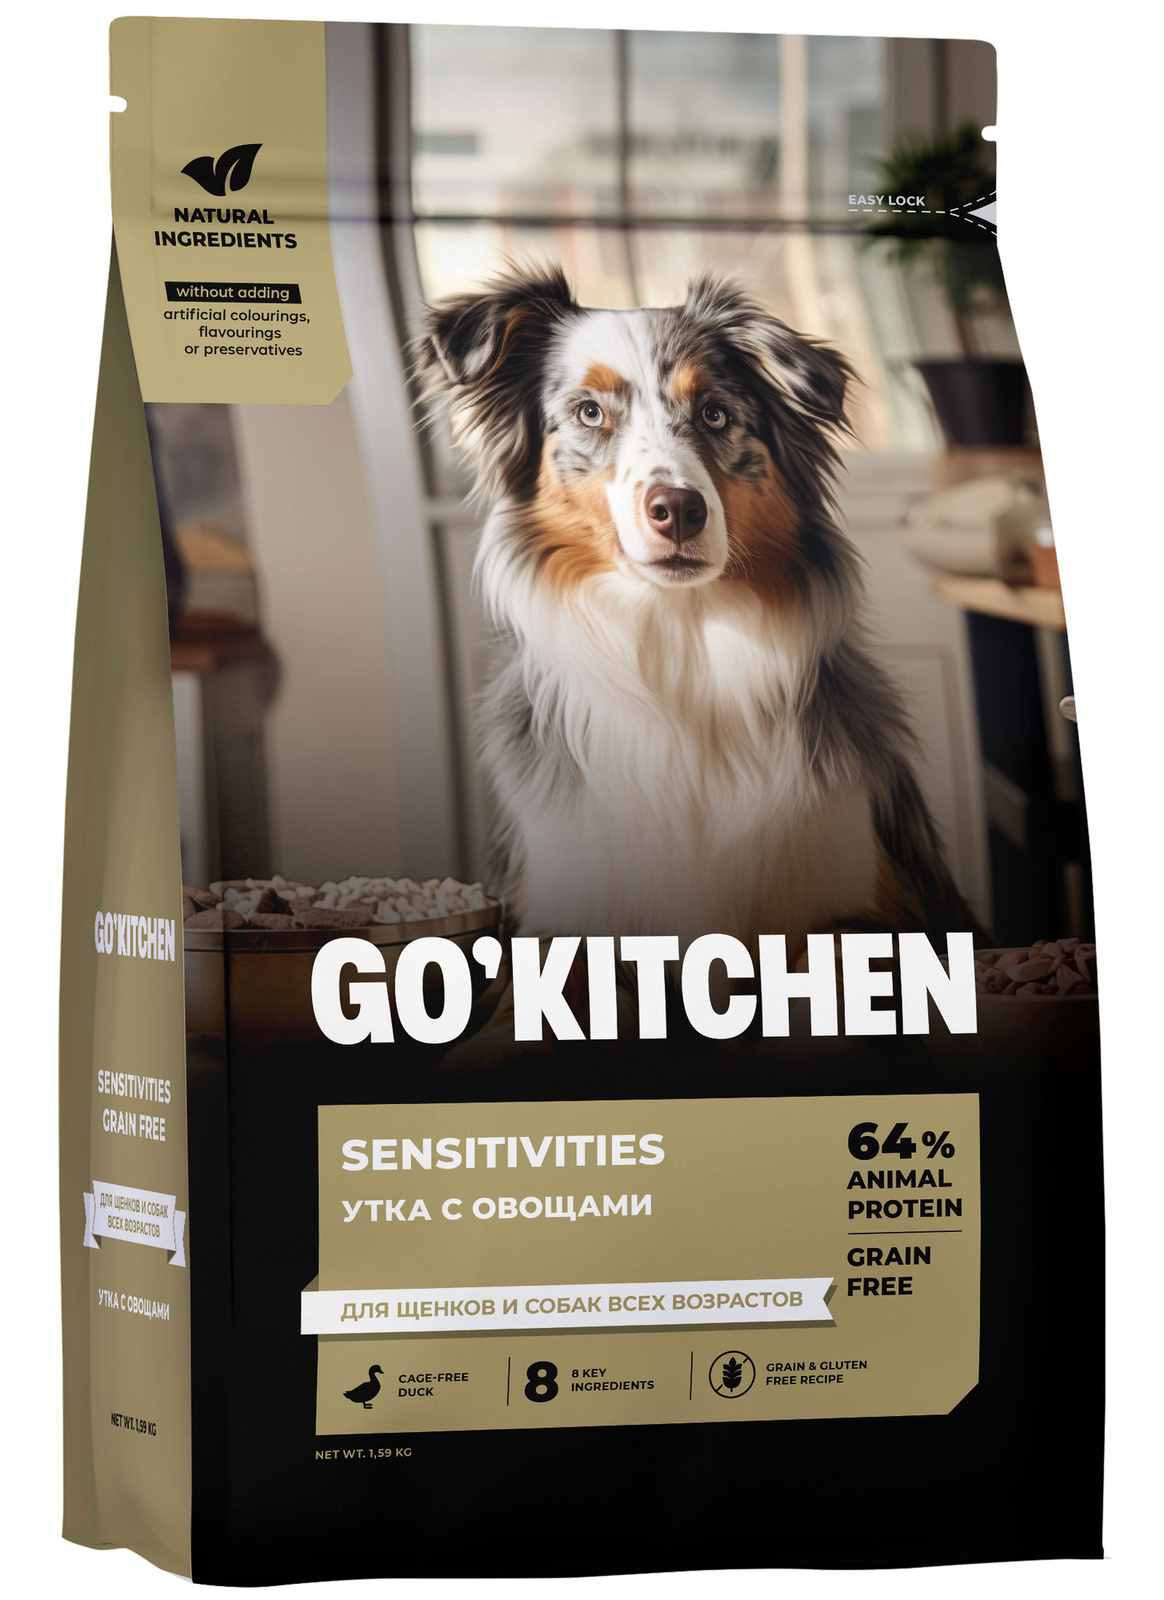 GO'KITCHEN GO'KITCHEN утка с овощами, полнорационный беззерновой сухой корм для щенков и собак всех возрастов с уткой для чувствительного пищеварения (1,59 кг)